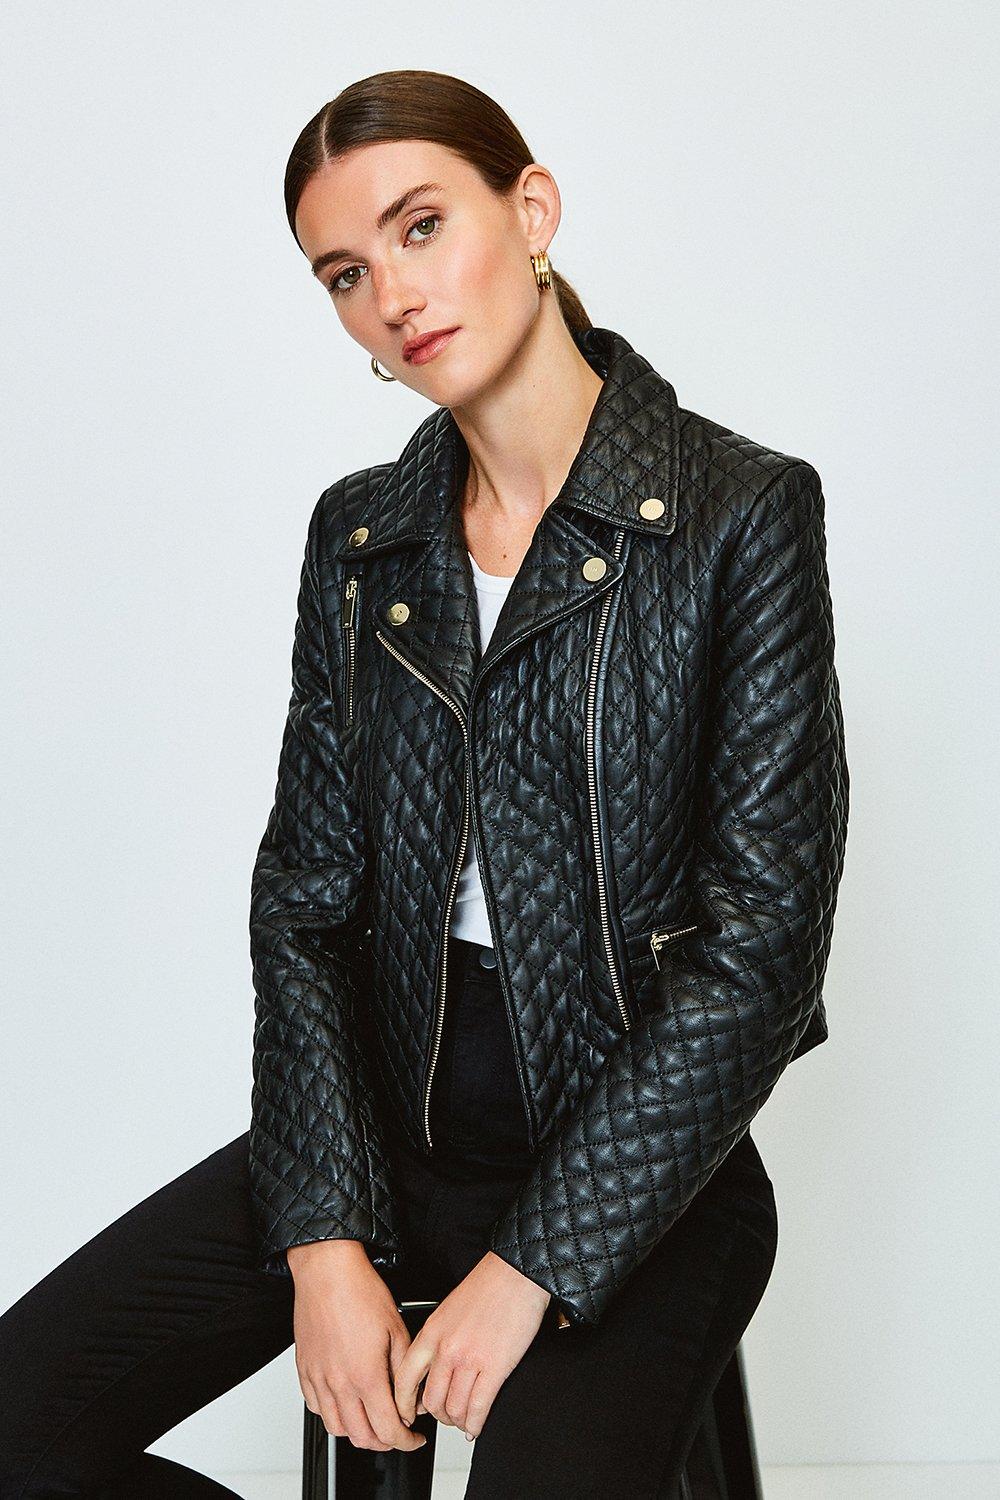 Karen Millen Leather Jacket Top Sellers, 59% OFF | www 